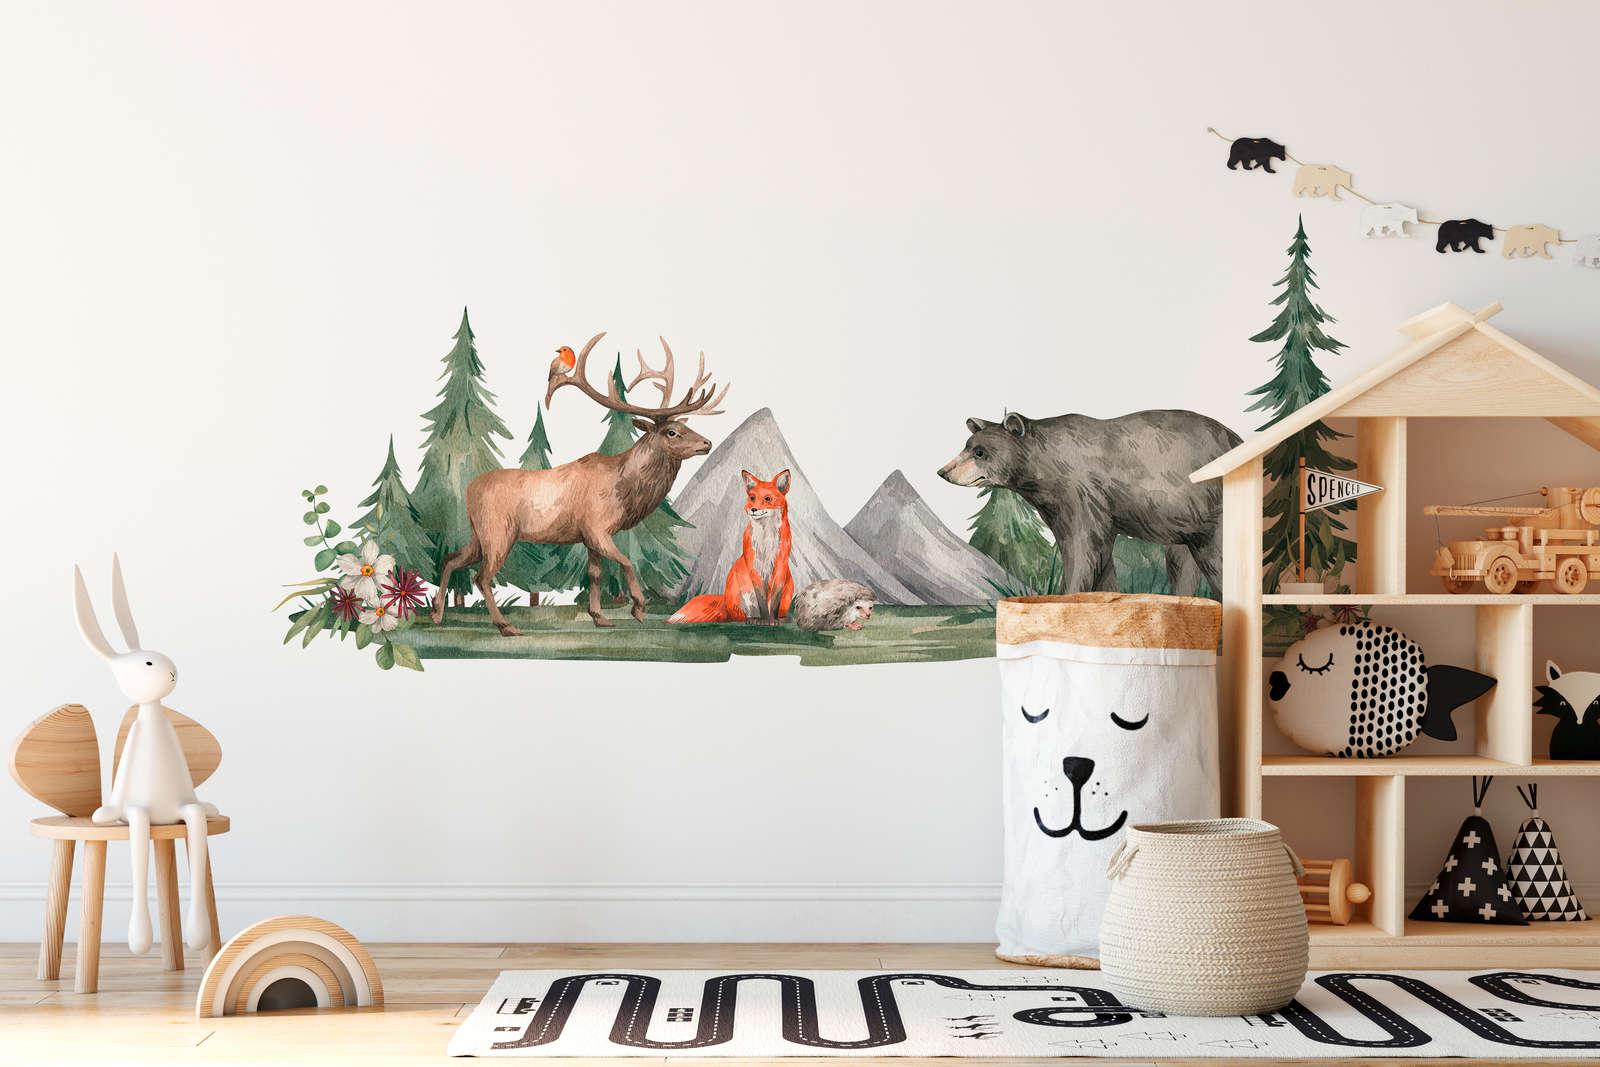             Papel pintado de habitación infantil con animales en el bosque - verde, marrón, blanco
        